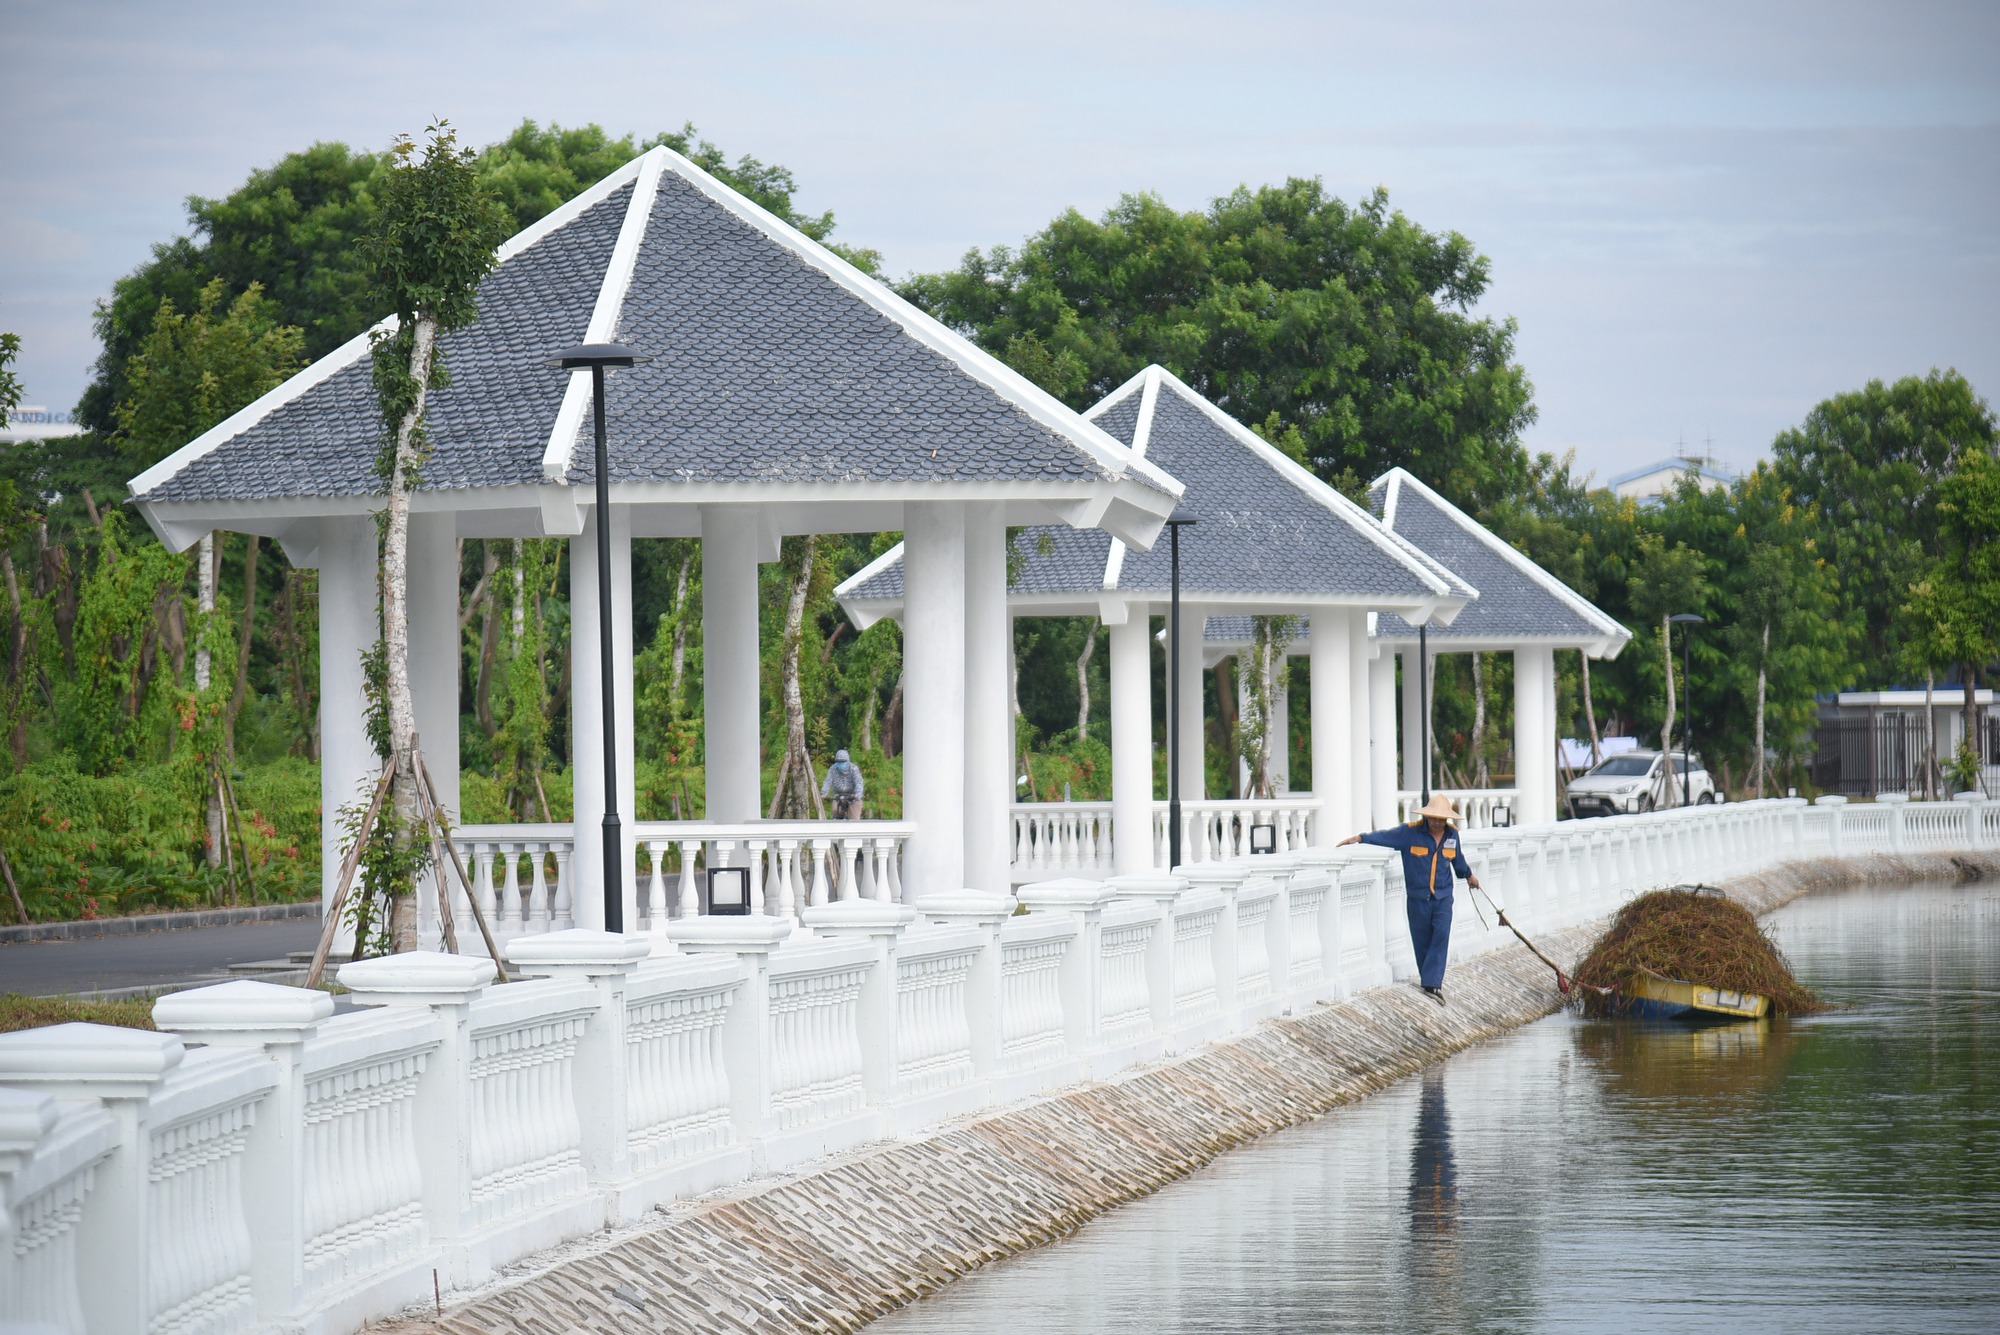 Hà Nội có thêm công viên rộng 157.000 m2, đầu tư gần 100 tỉ đồng  - Ảnh 11.